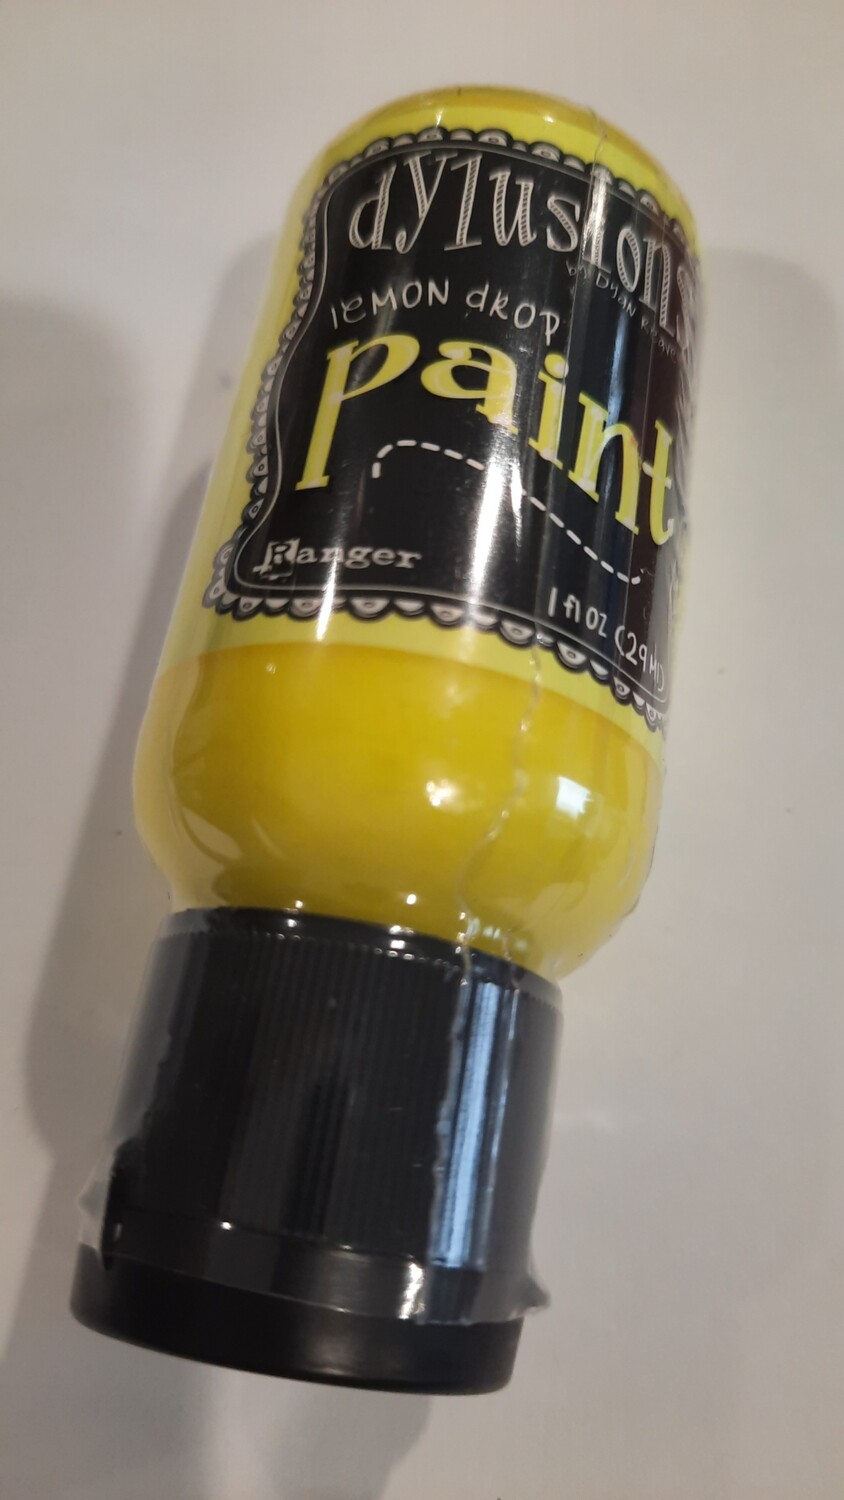 Dylusions flip top paint 1oz Lemon Drop